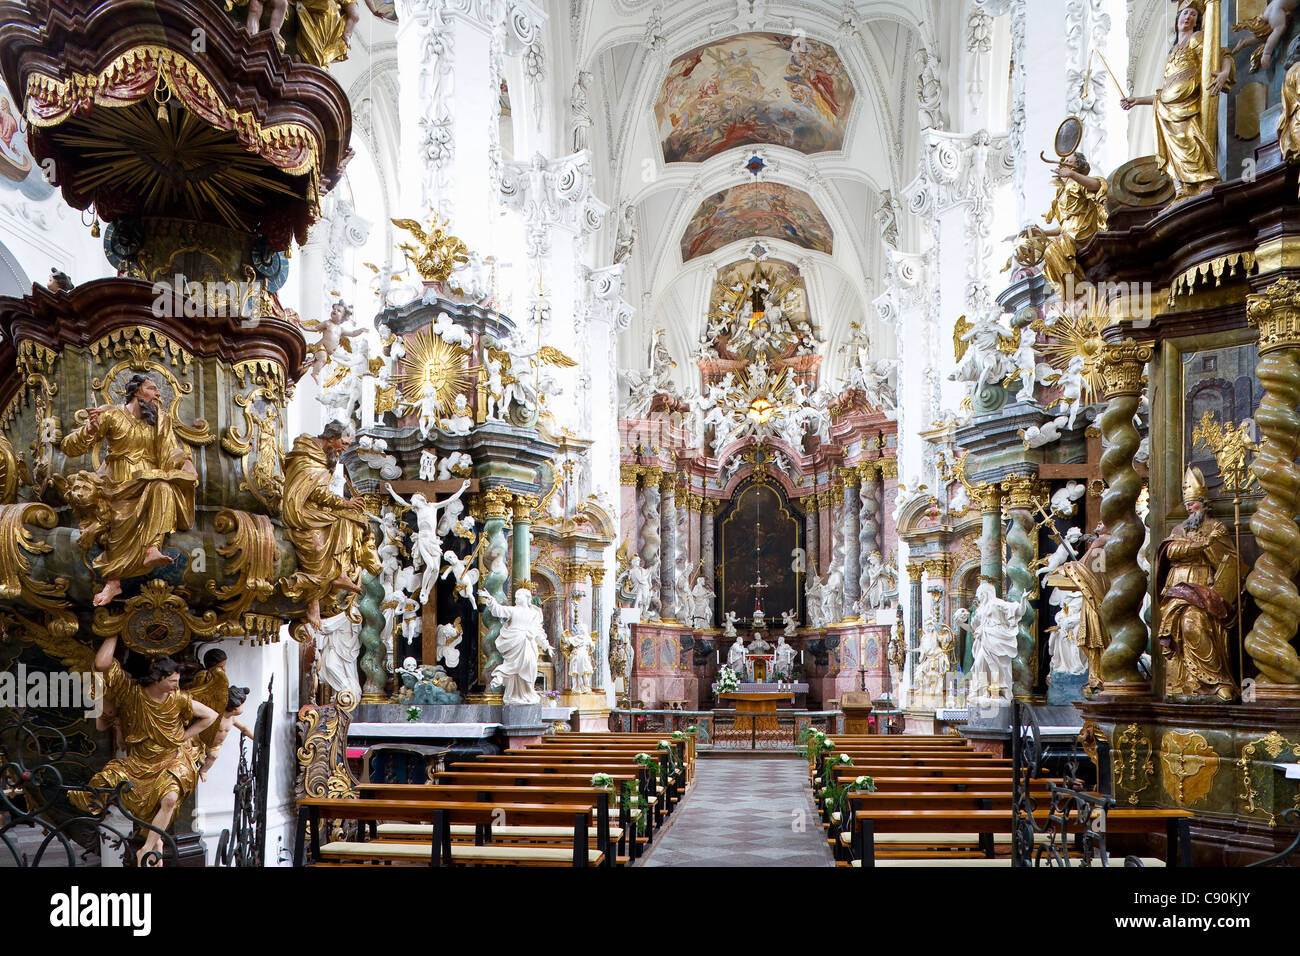 Innenansicht des Klosters Neuzelle, Zisterzienser-Kloster in der Nähe von München, Niederlausitz, Brandenburg, Deutschland, Europa Stockfoto